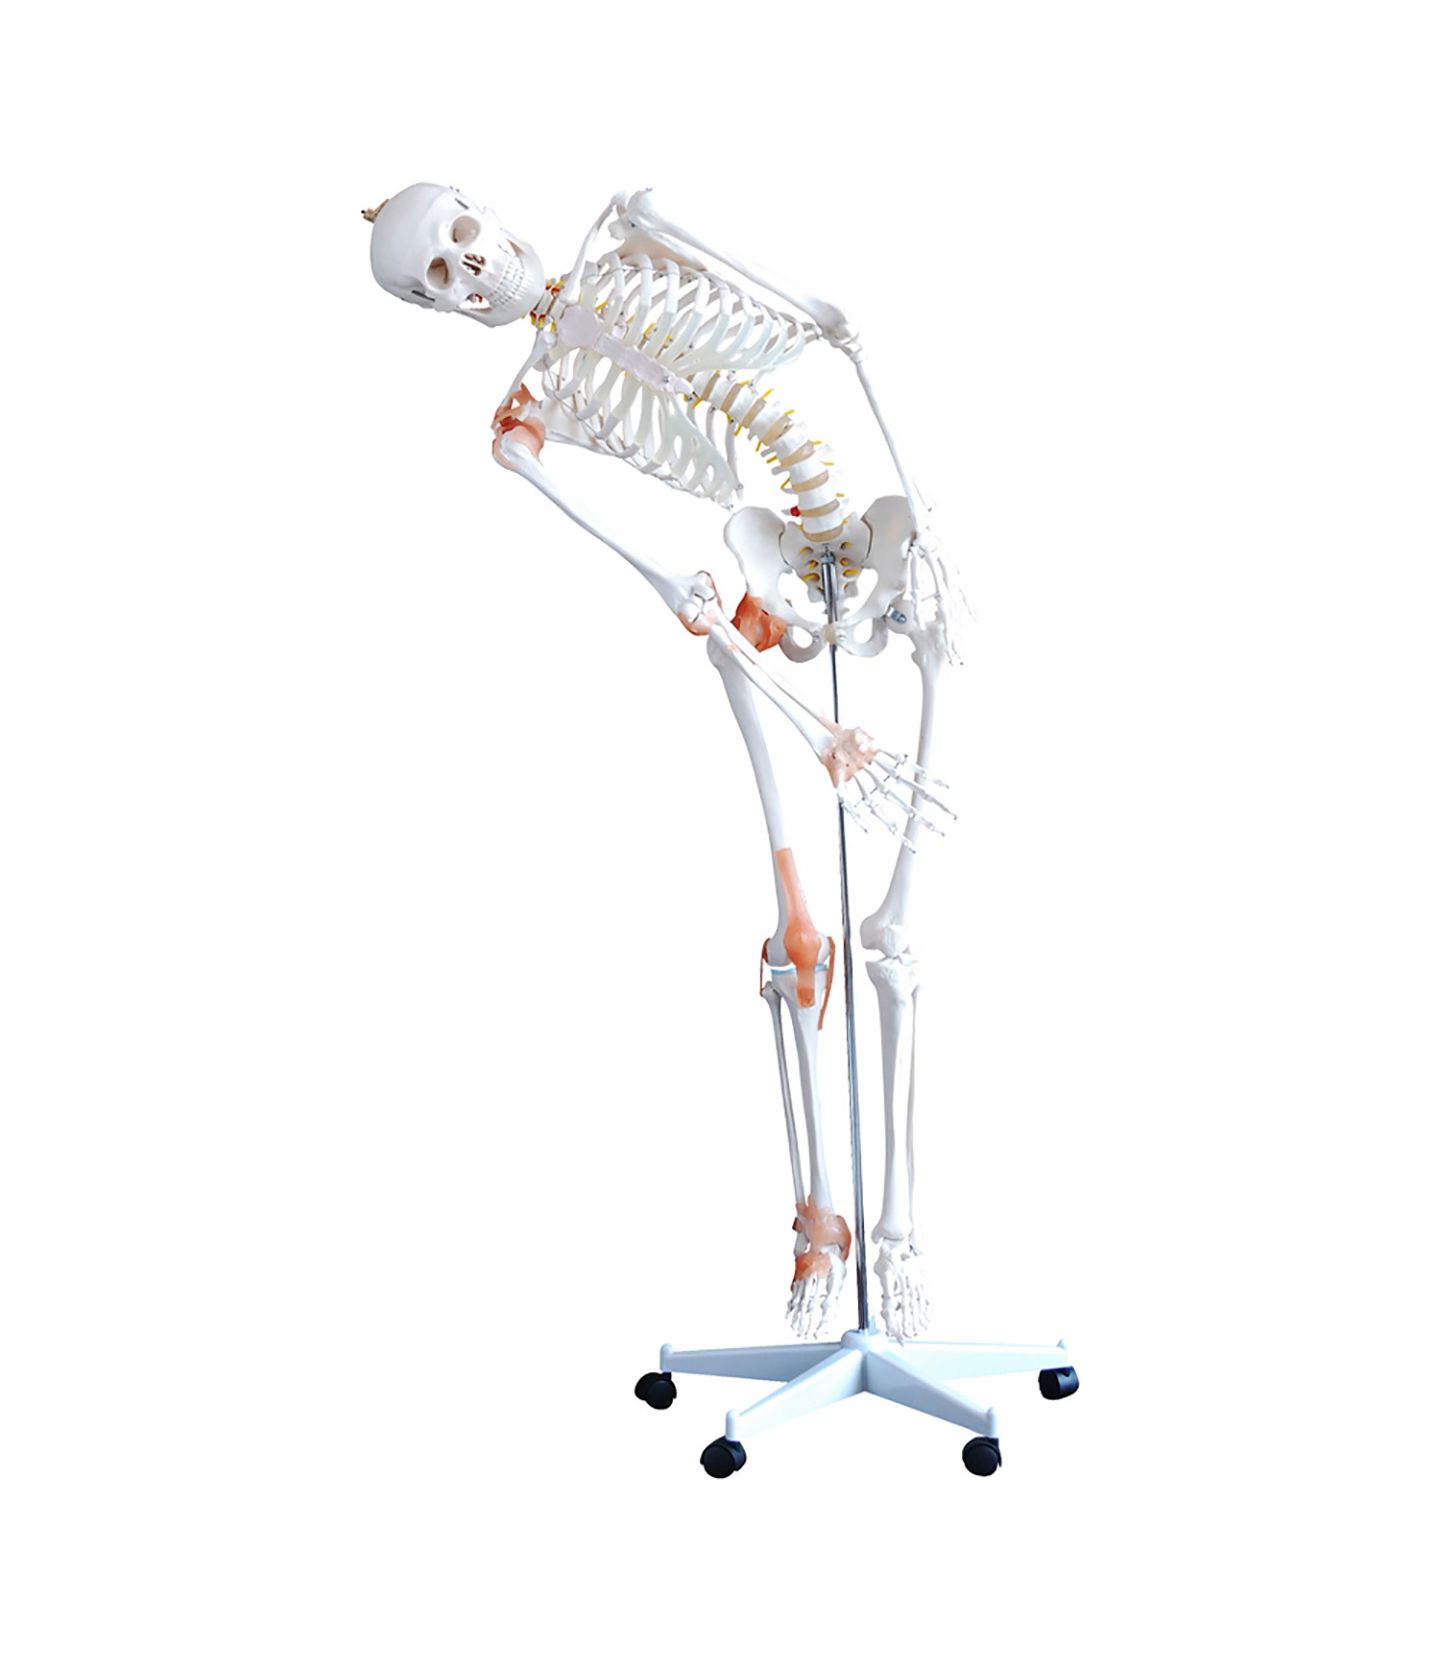 Squelette Anatomie, détaillé en grandeur nature, Les articulations